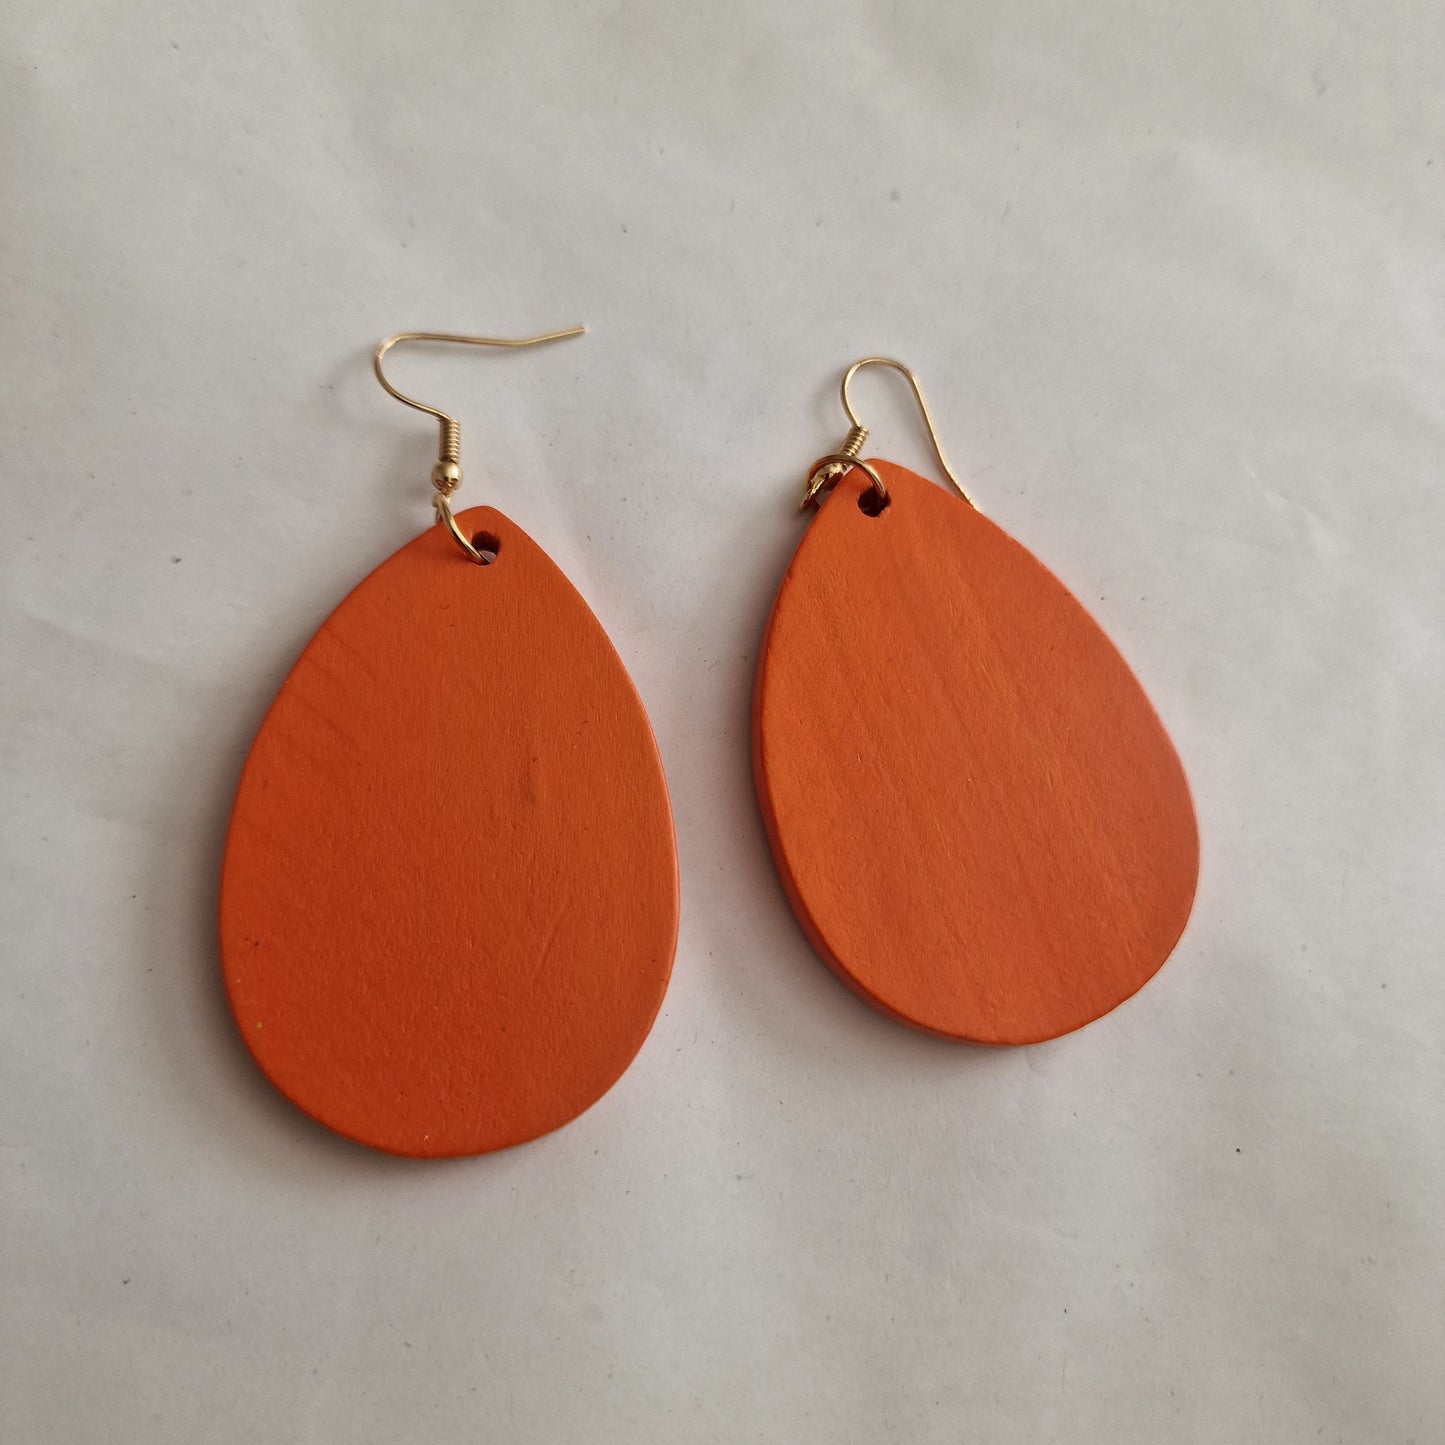 Wooden earrings - orange